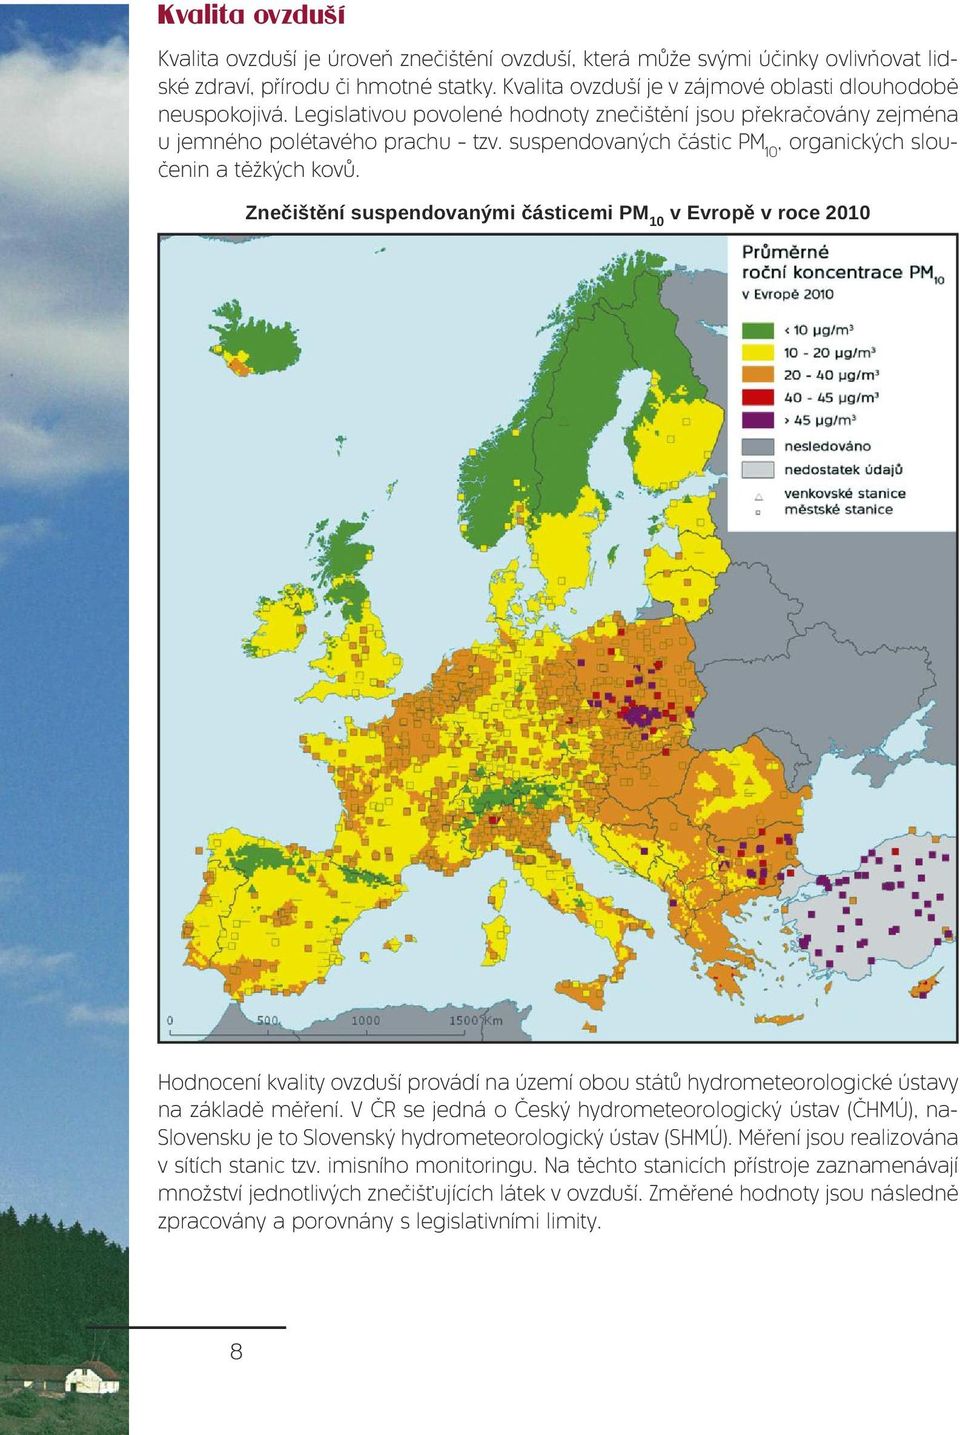 Znečištění suspendovanými částicemi PM 10 v Evropě v roce 2010 Hodnocení kvality ovzduší provádí na území obou států hydrometeorologické ústavy na základě měření.